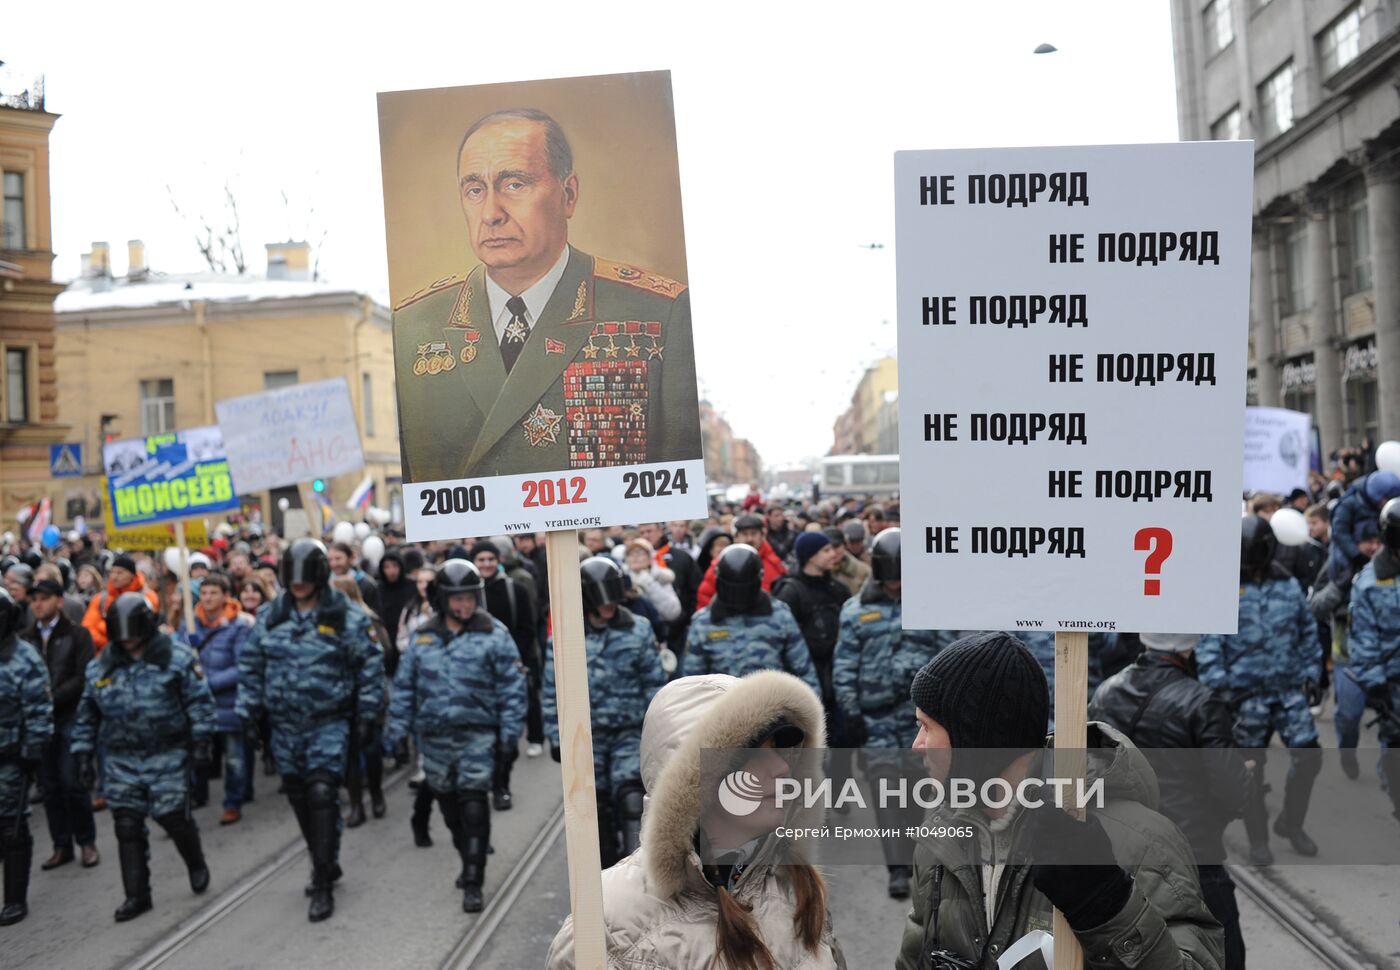 Шествие "За честные выборы" в Санкт-Петербурге